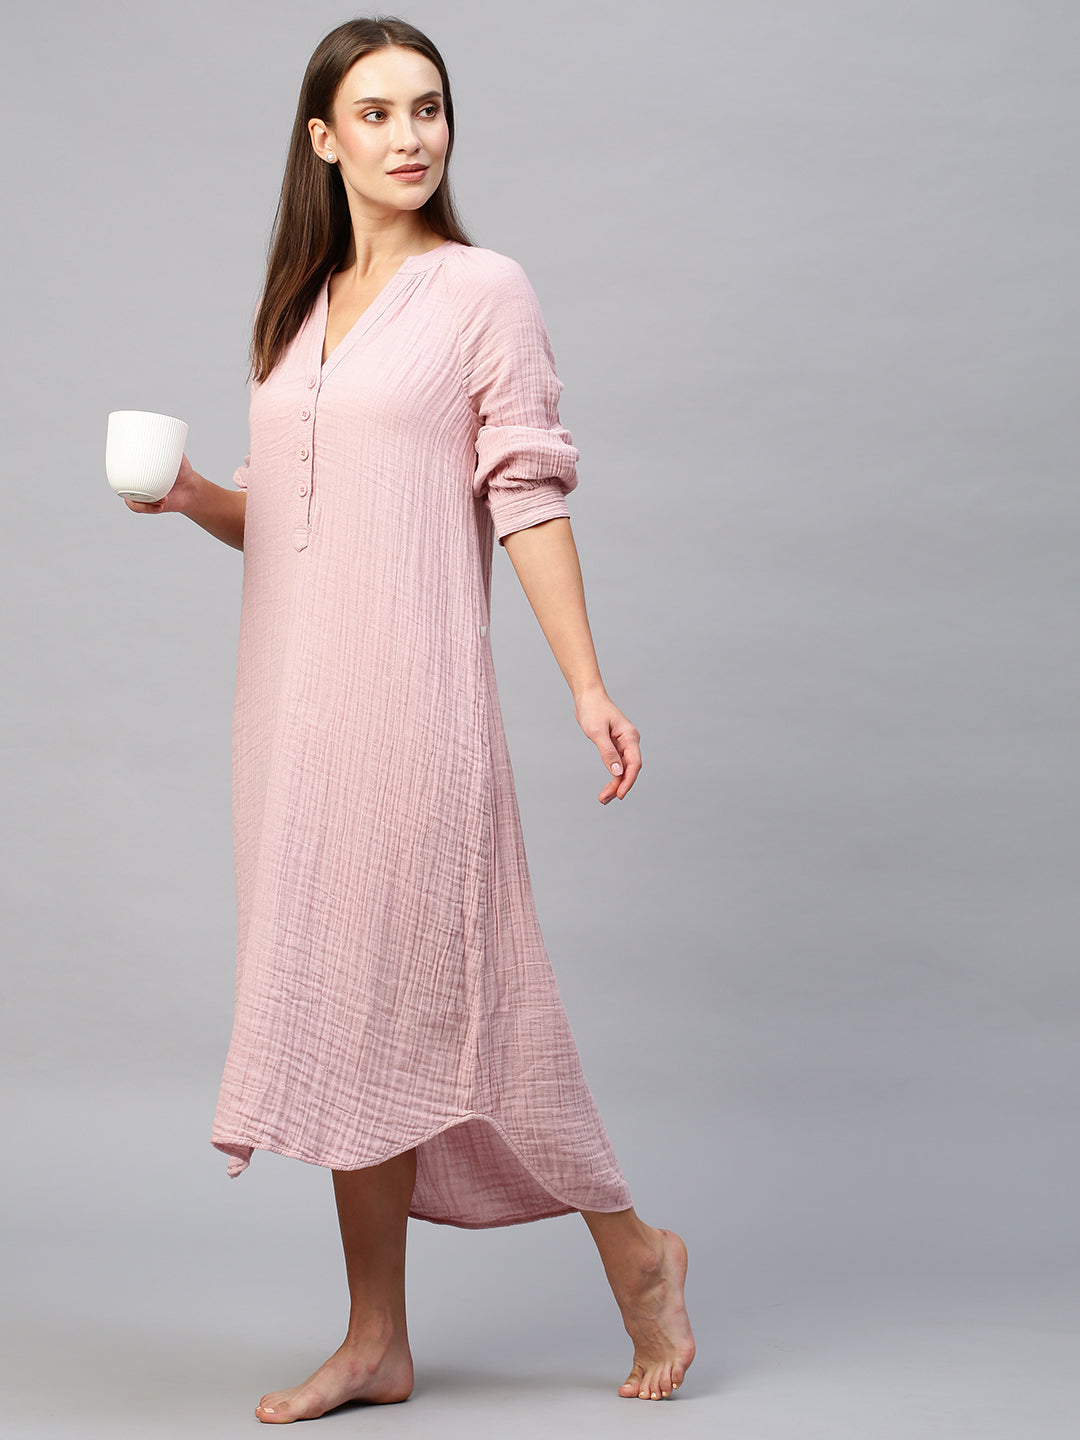 Ladies Nightie Nightdress Dream Sleep Night Shirt Pyjamas Plus sizes | eBay